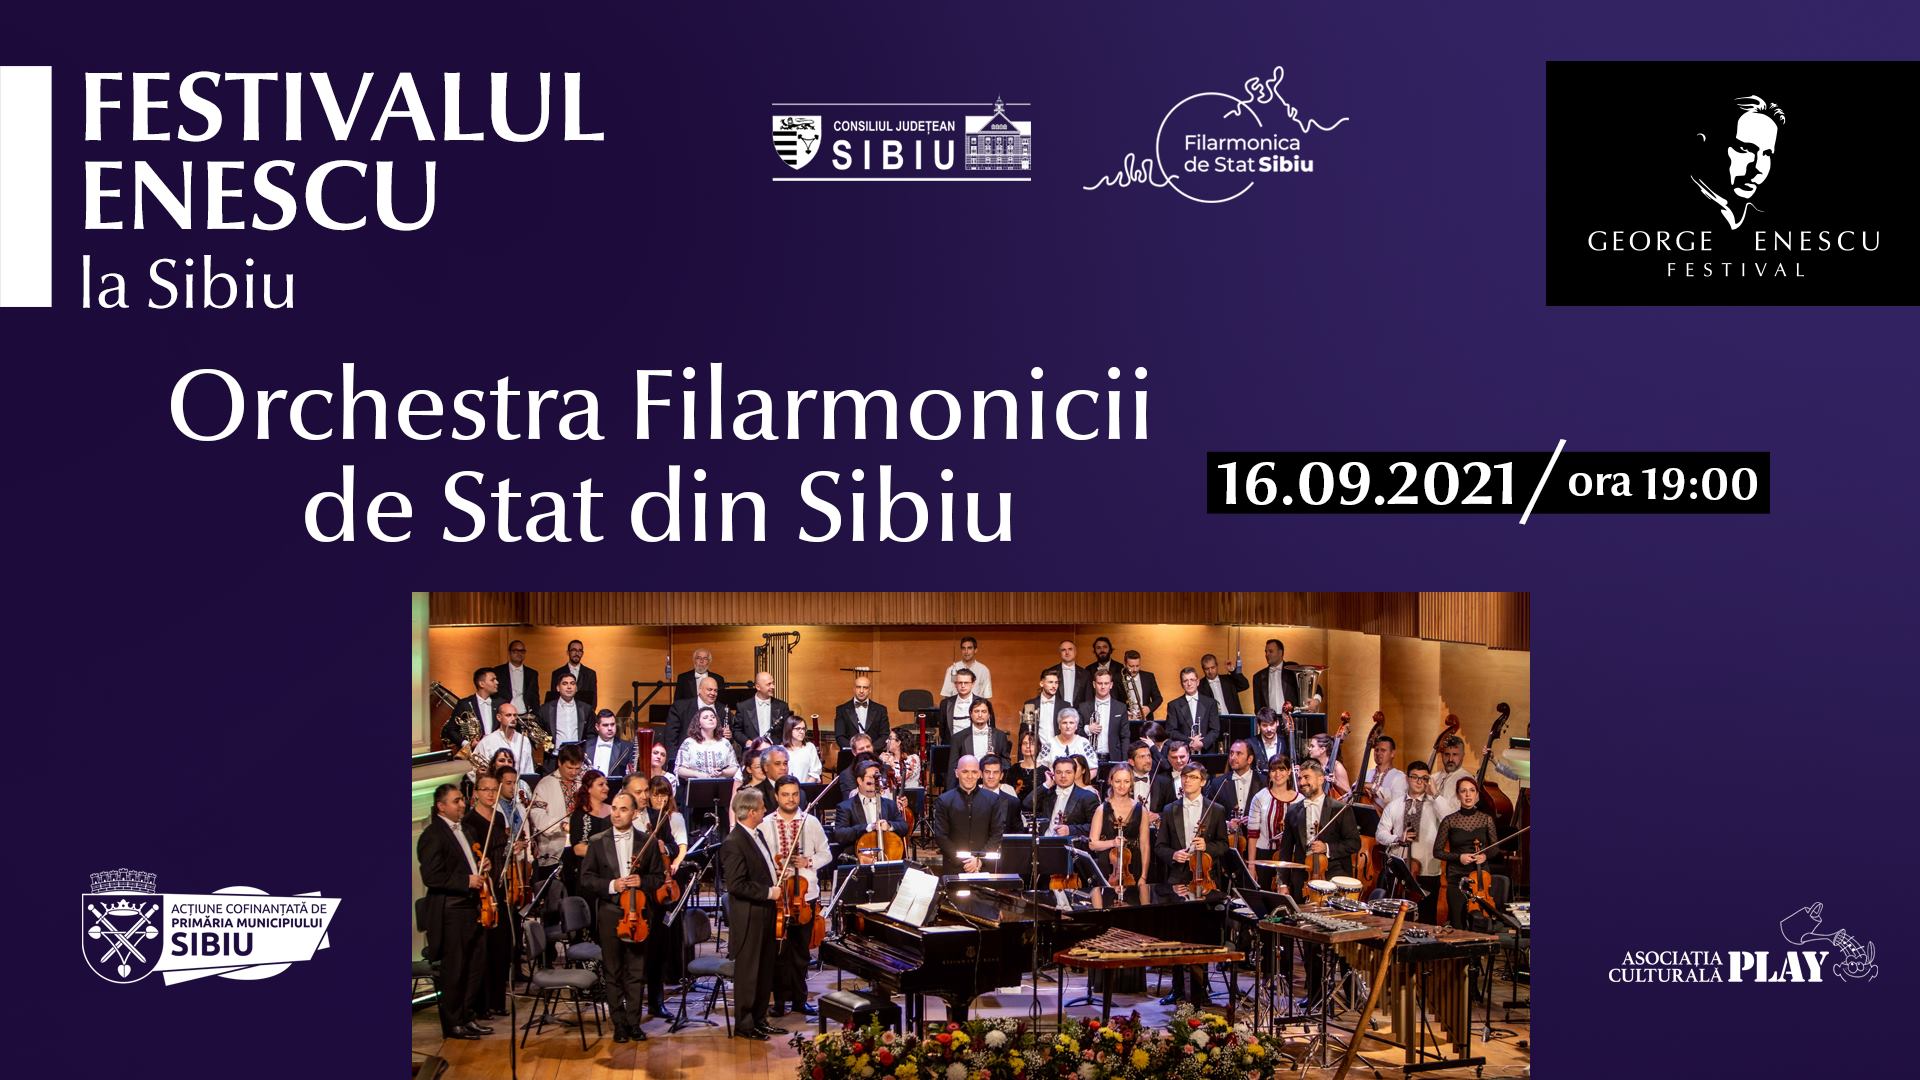 Concert Orchestra Filarmonicii de Stat din Sibiu ✦ Festivalul Enescu la Sibiu